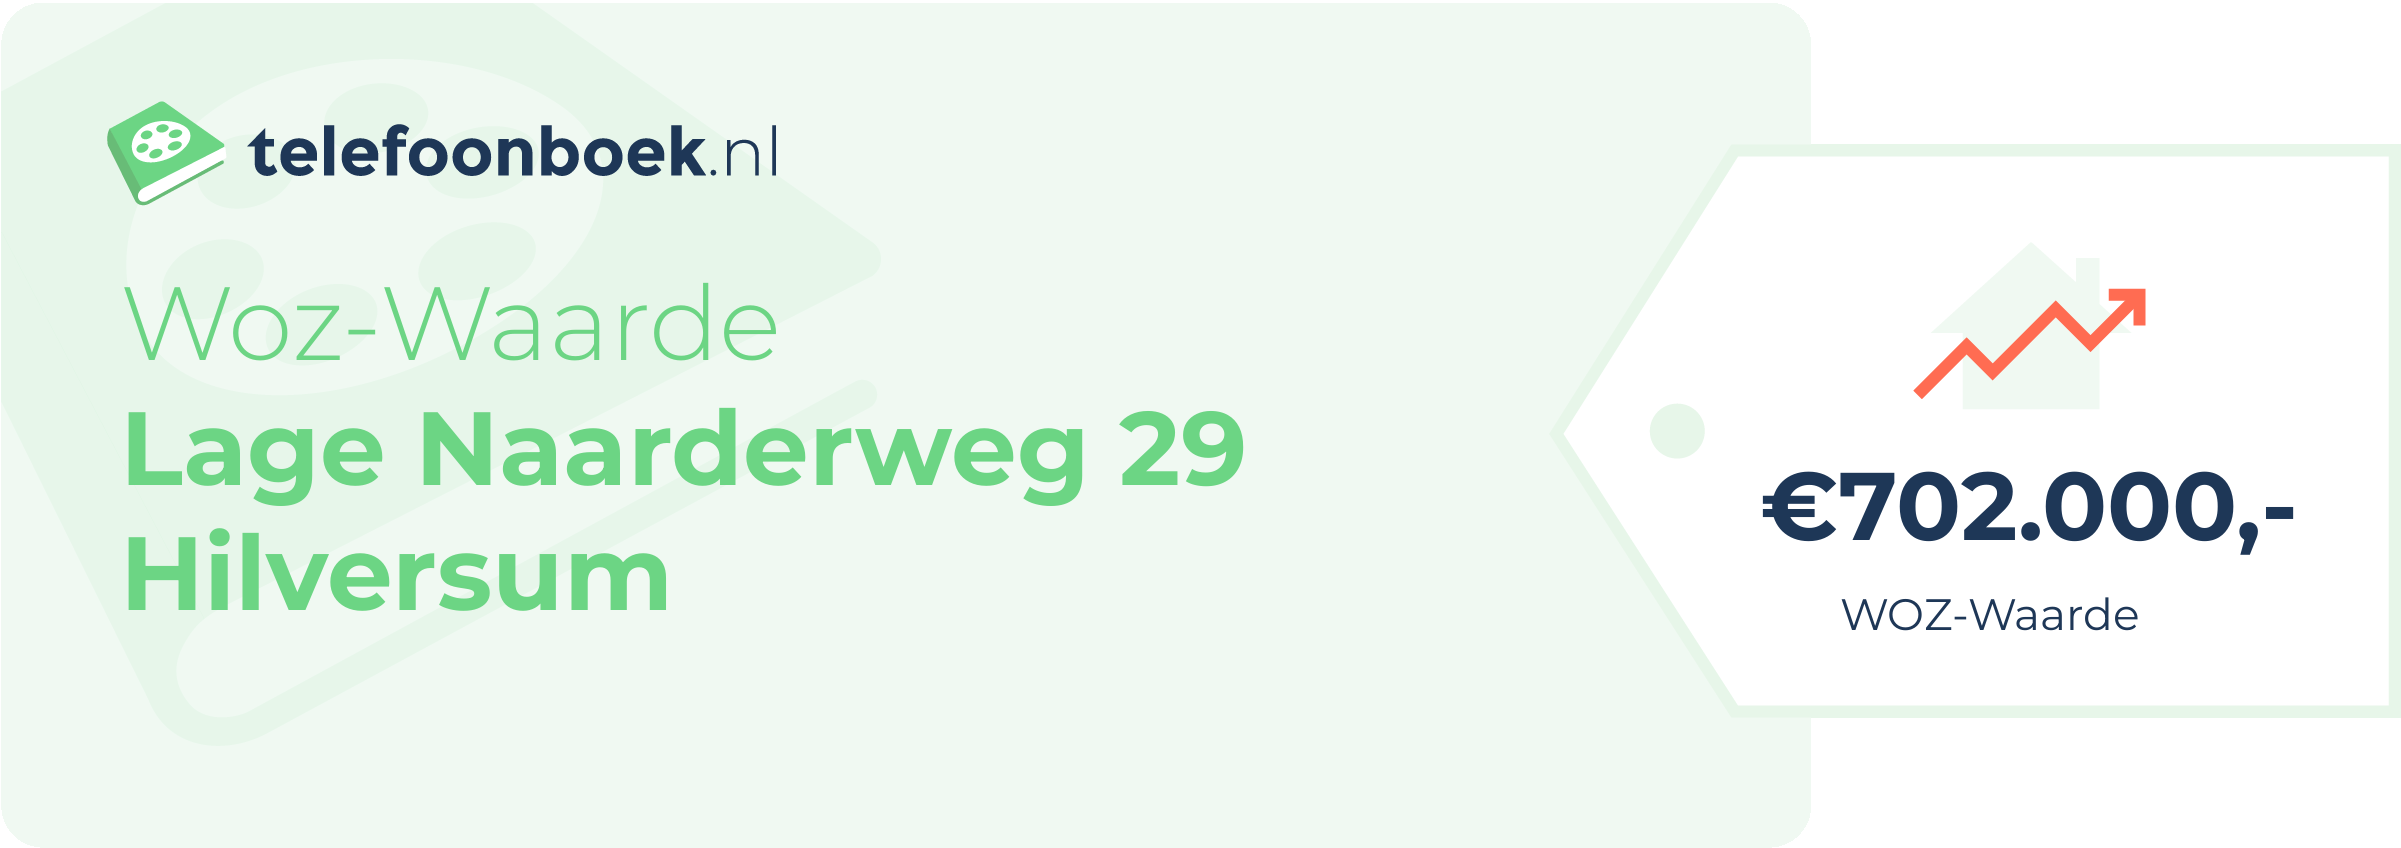 WOZ-waarde Lage Naarderweg 29 Hilversum